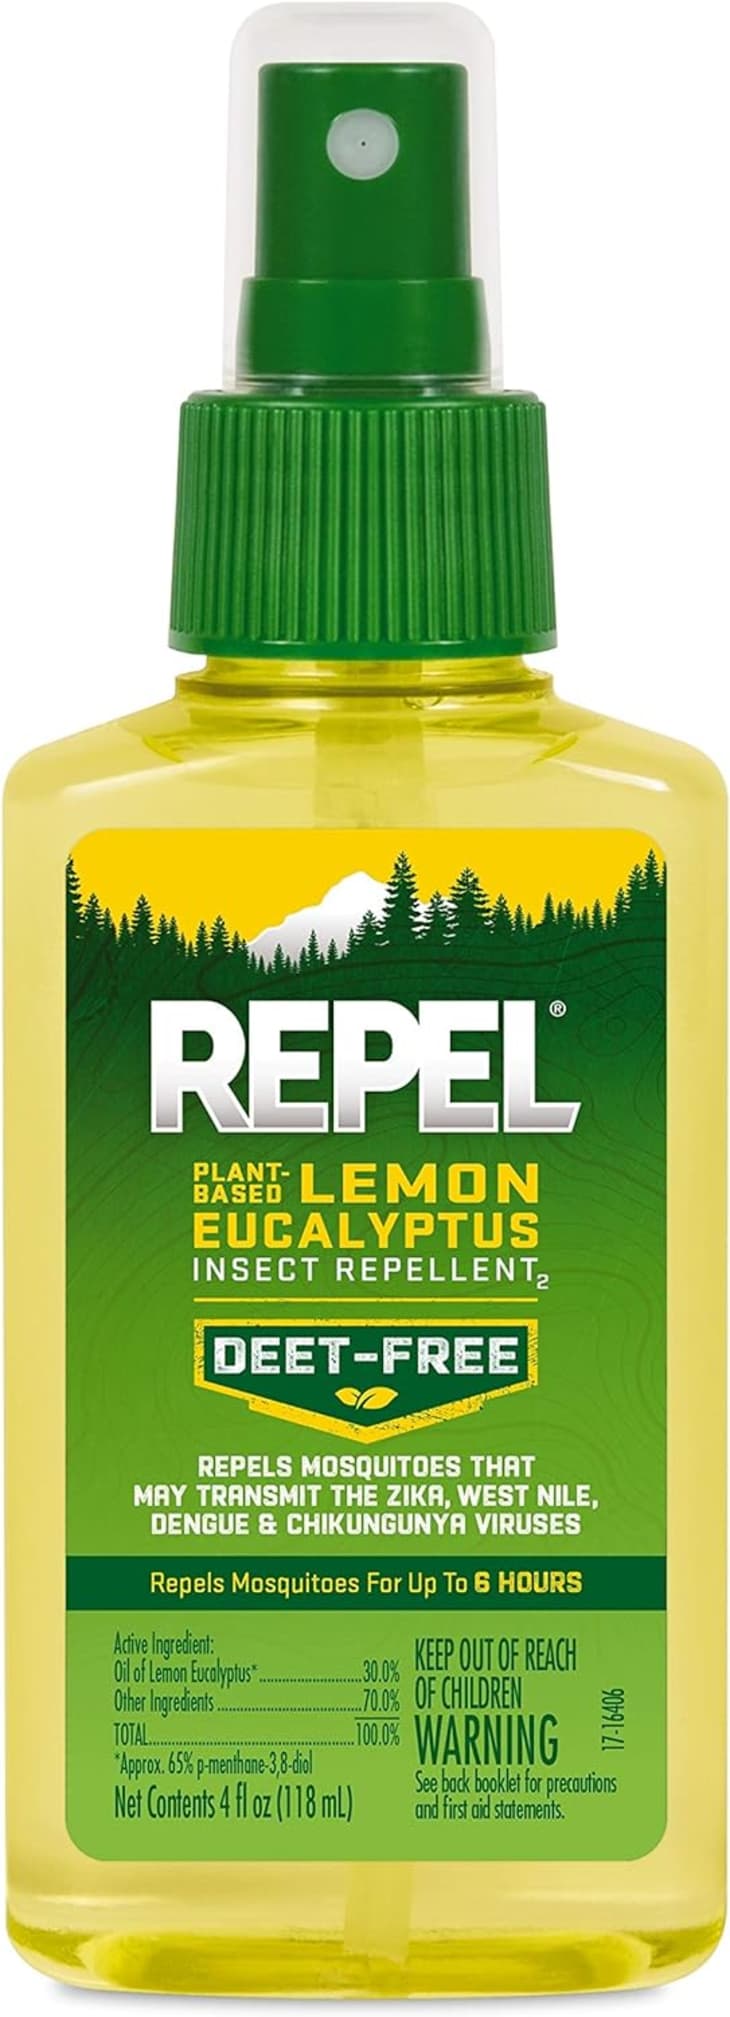 strongest deet insect repellent